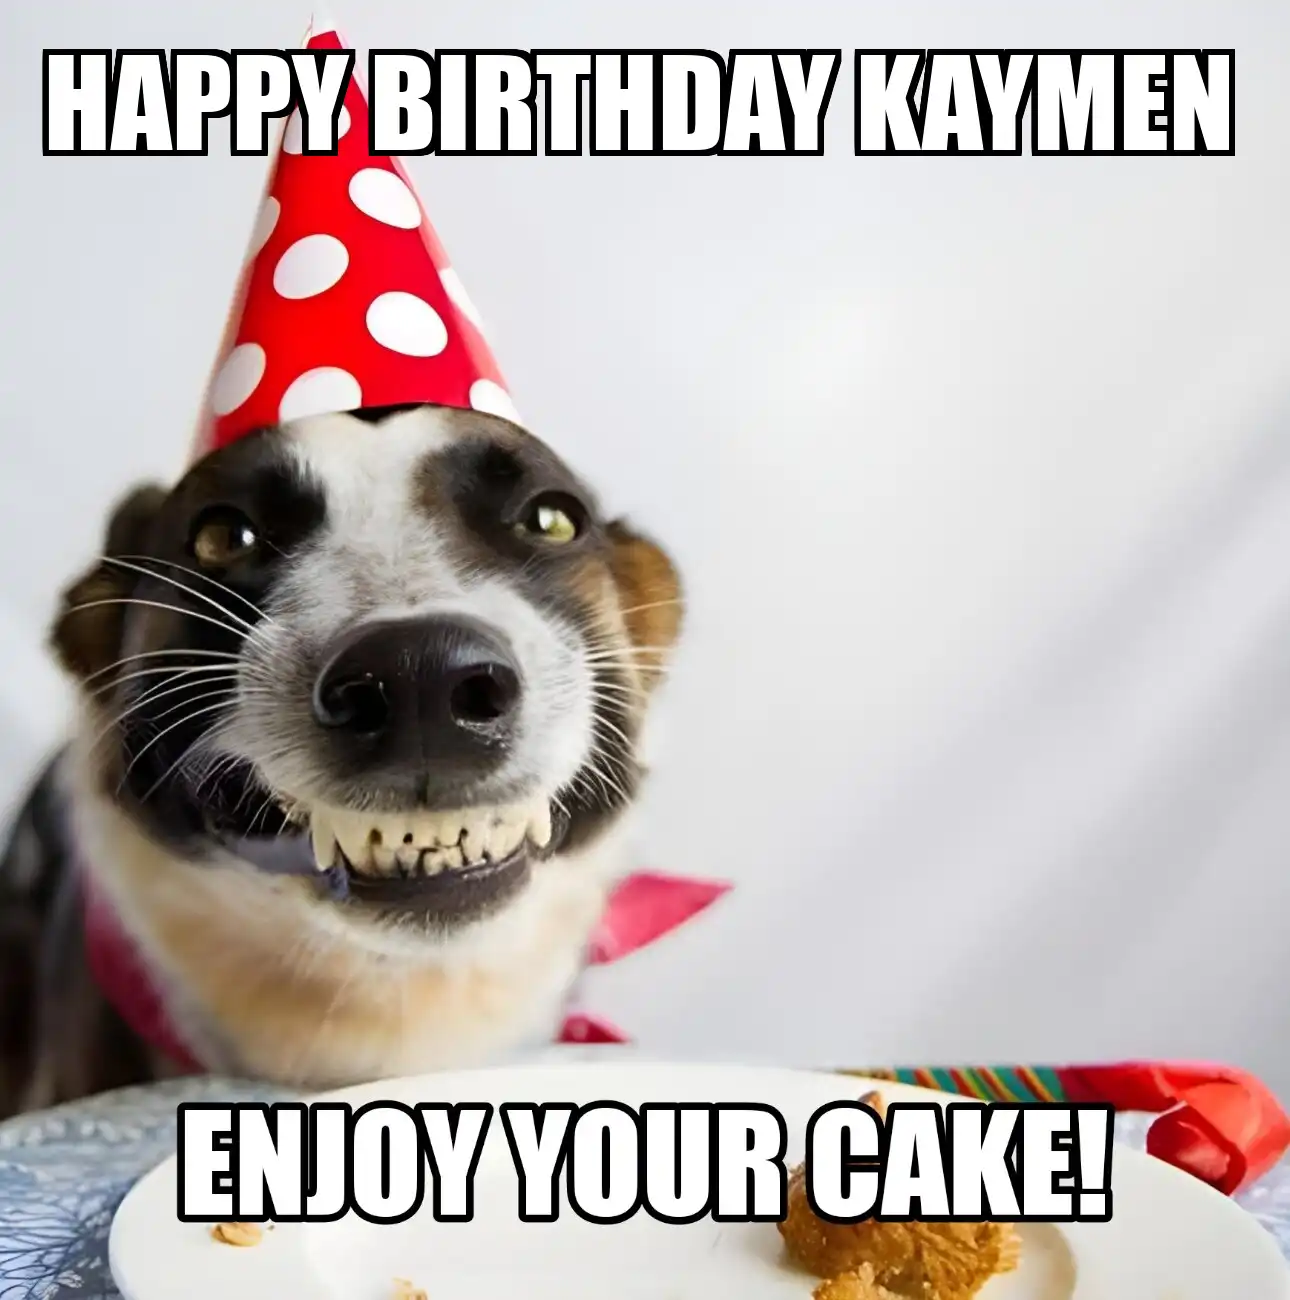 Happy Birthday Kaymen Enjoy Your Cake Dog Meme